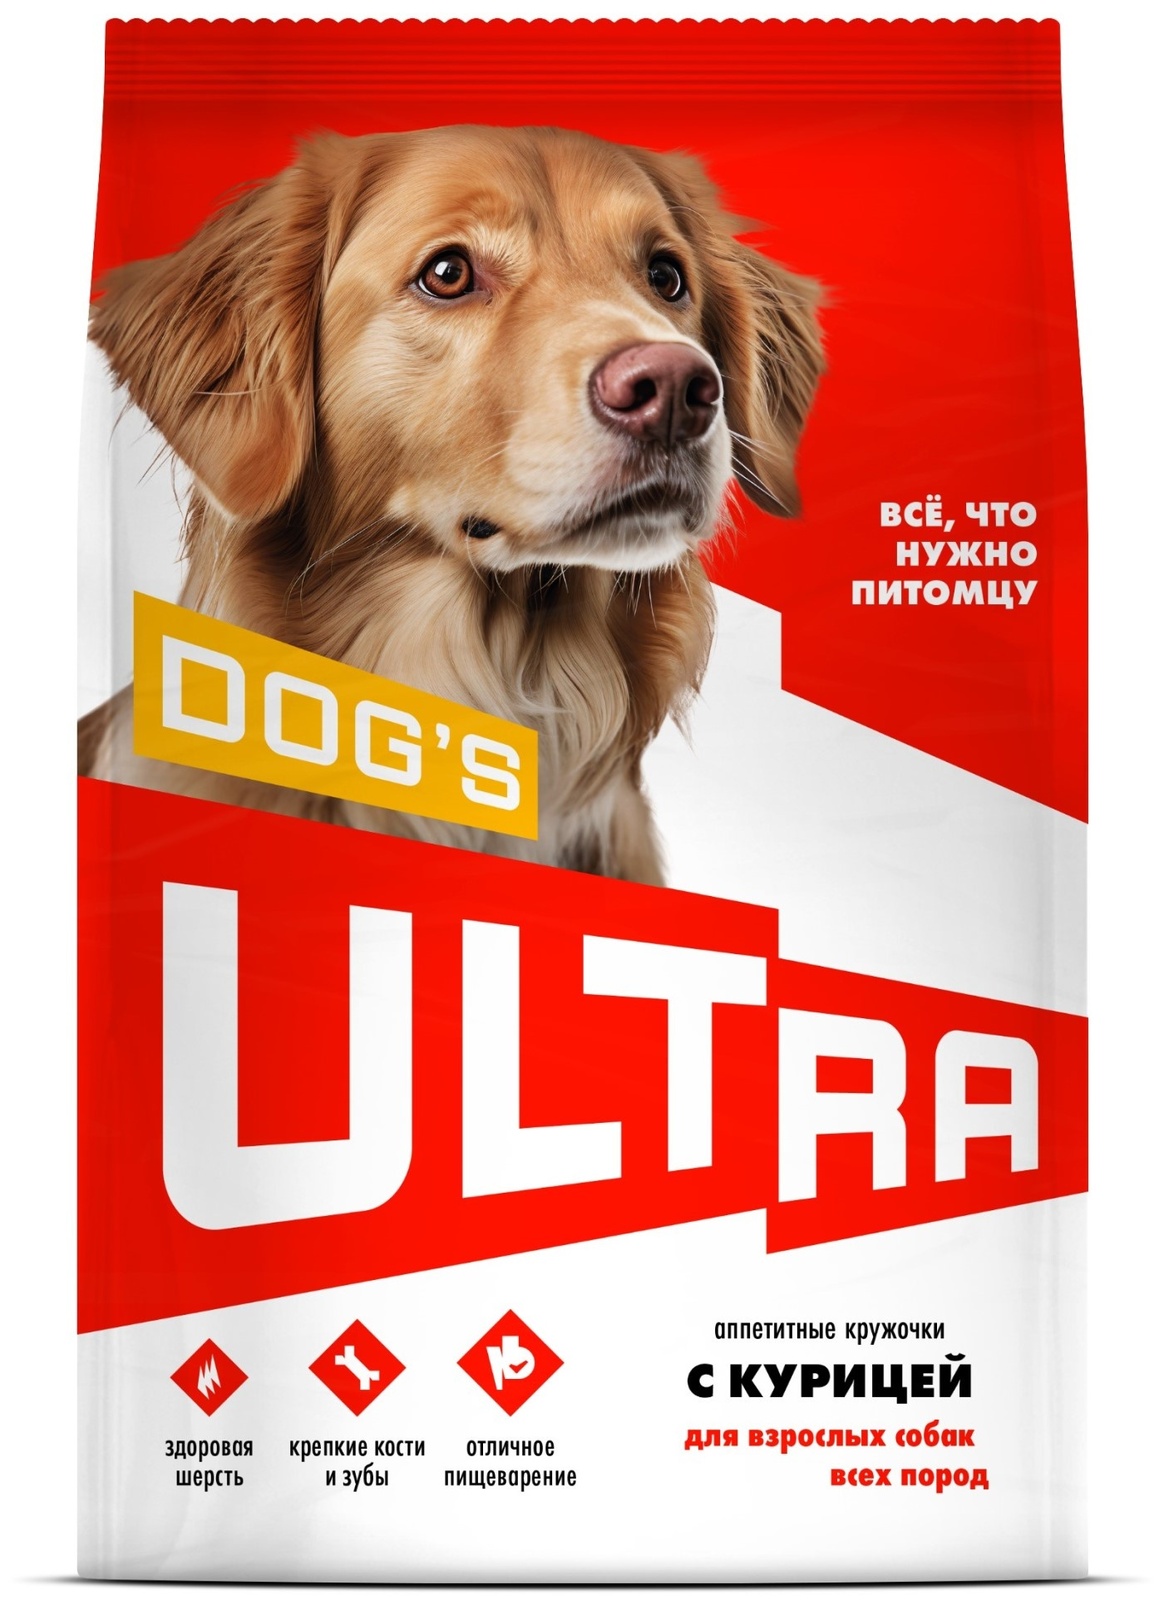 ULTRA ULTRA аппетитные кружочки с курицей для взрослых собак всех пород (12 кг) ultra ultra аппетитные кружочки 3 вида мяса для взрослых собак всех пород 12 кг